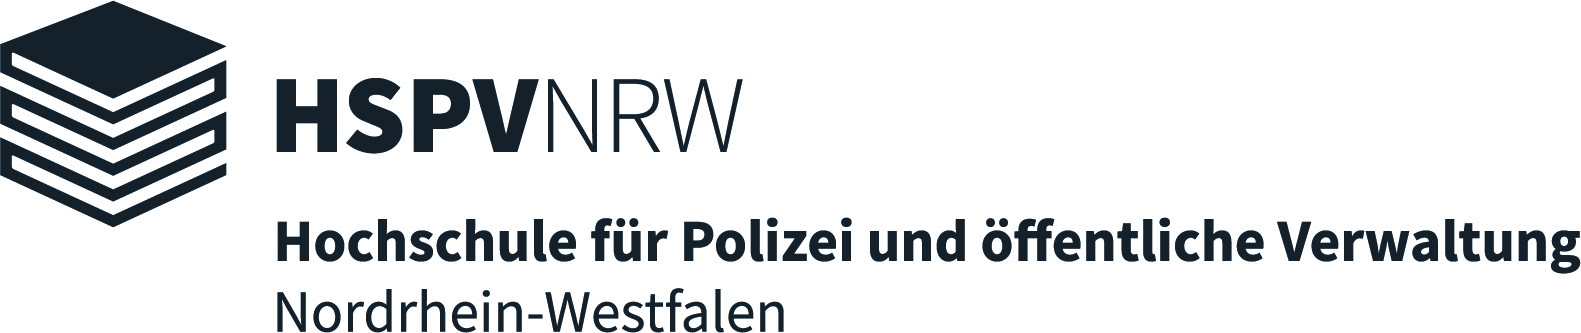 HSPV NRW - Hochschule für Polizei und öffentliche Verwaltung Nordrhein-Westfalen